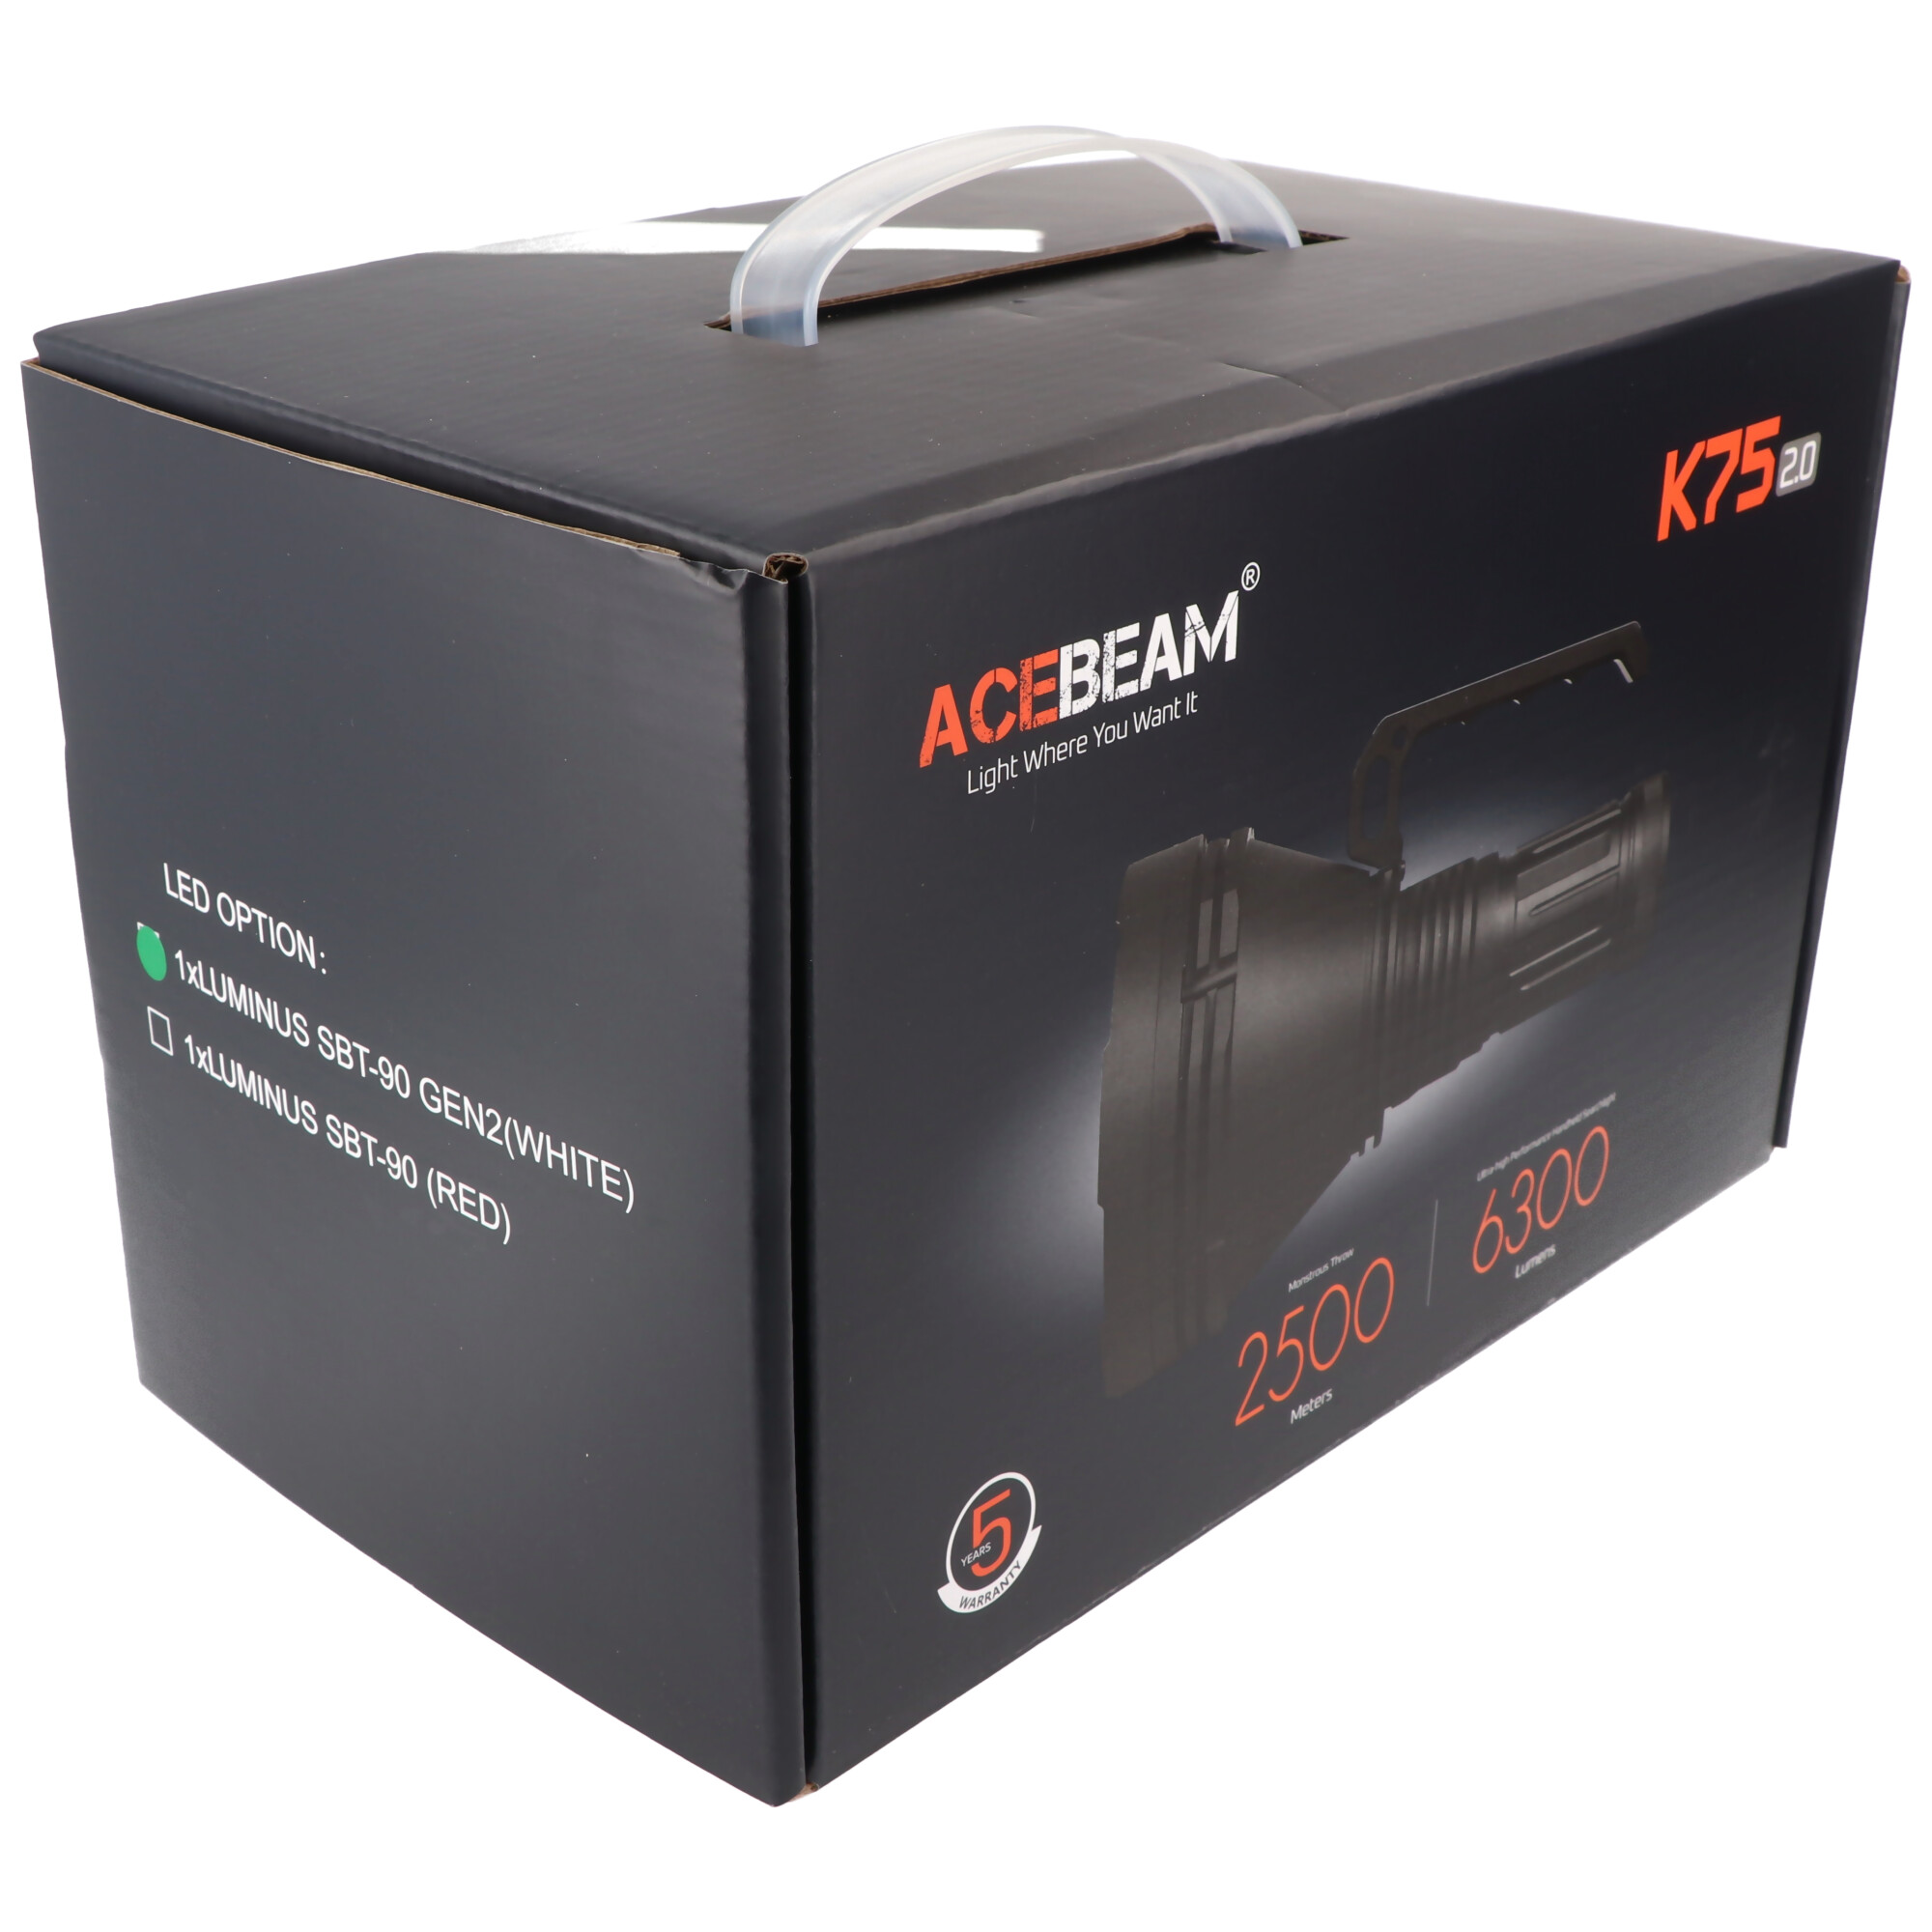 AceBeam K75 2.0 mit weißer LED, 6.300 Lumen und 2.500 Meter Reichweite, mit 4 Akkus, Ladegerät und USB-Schnellladegerät